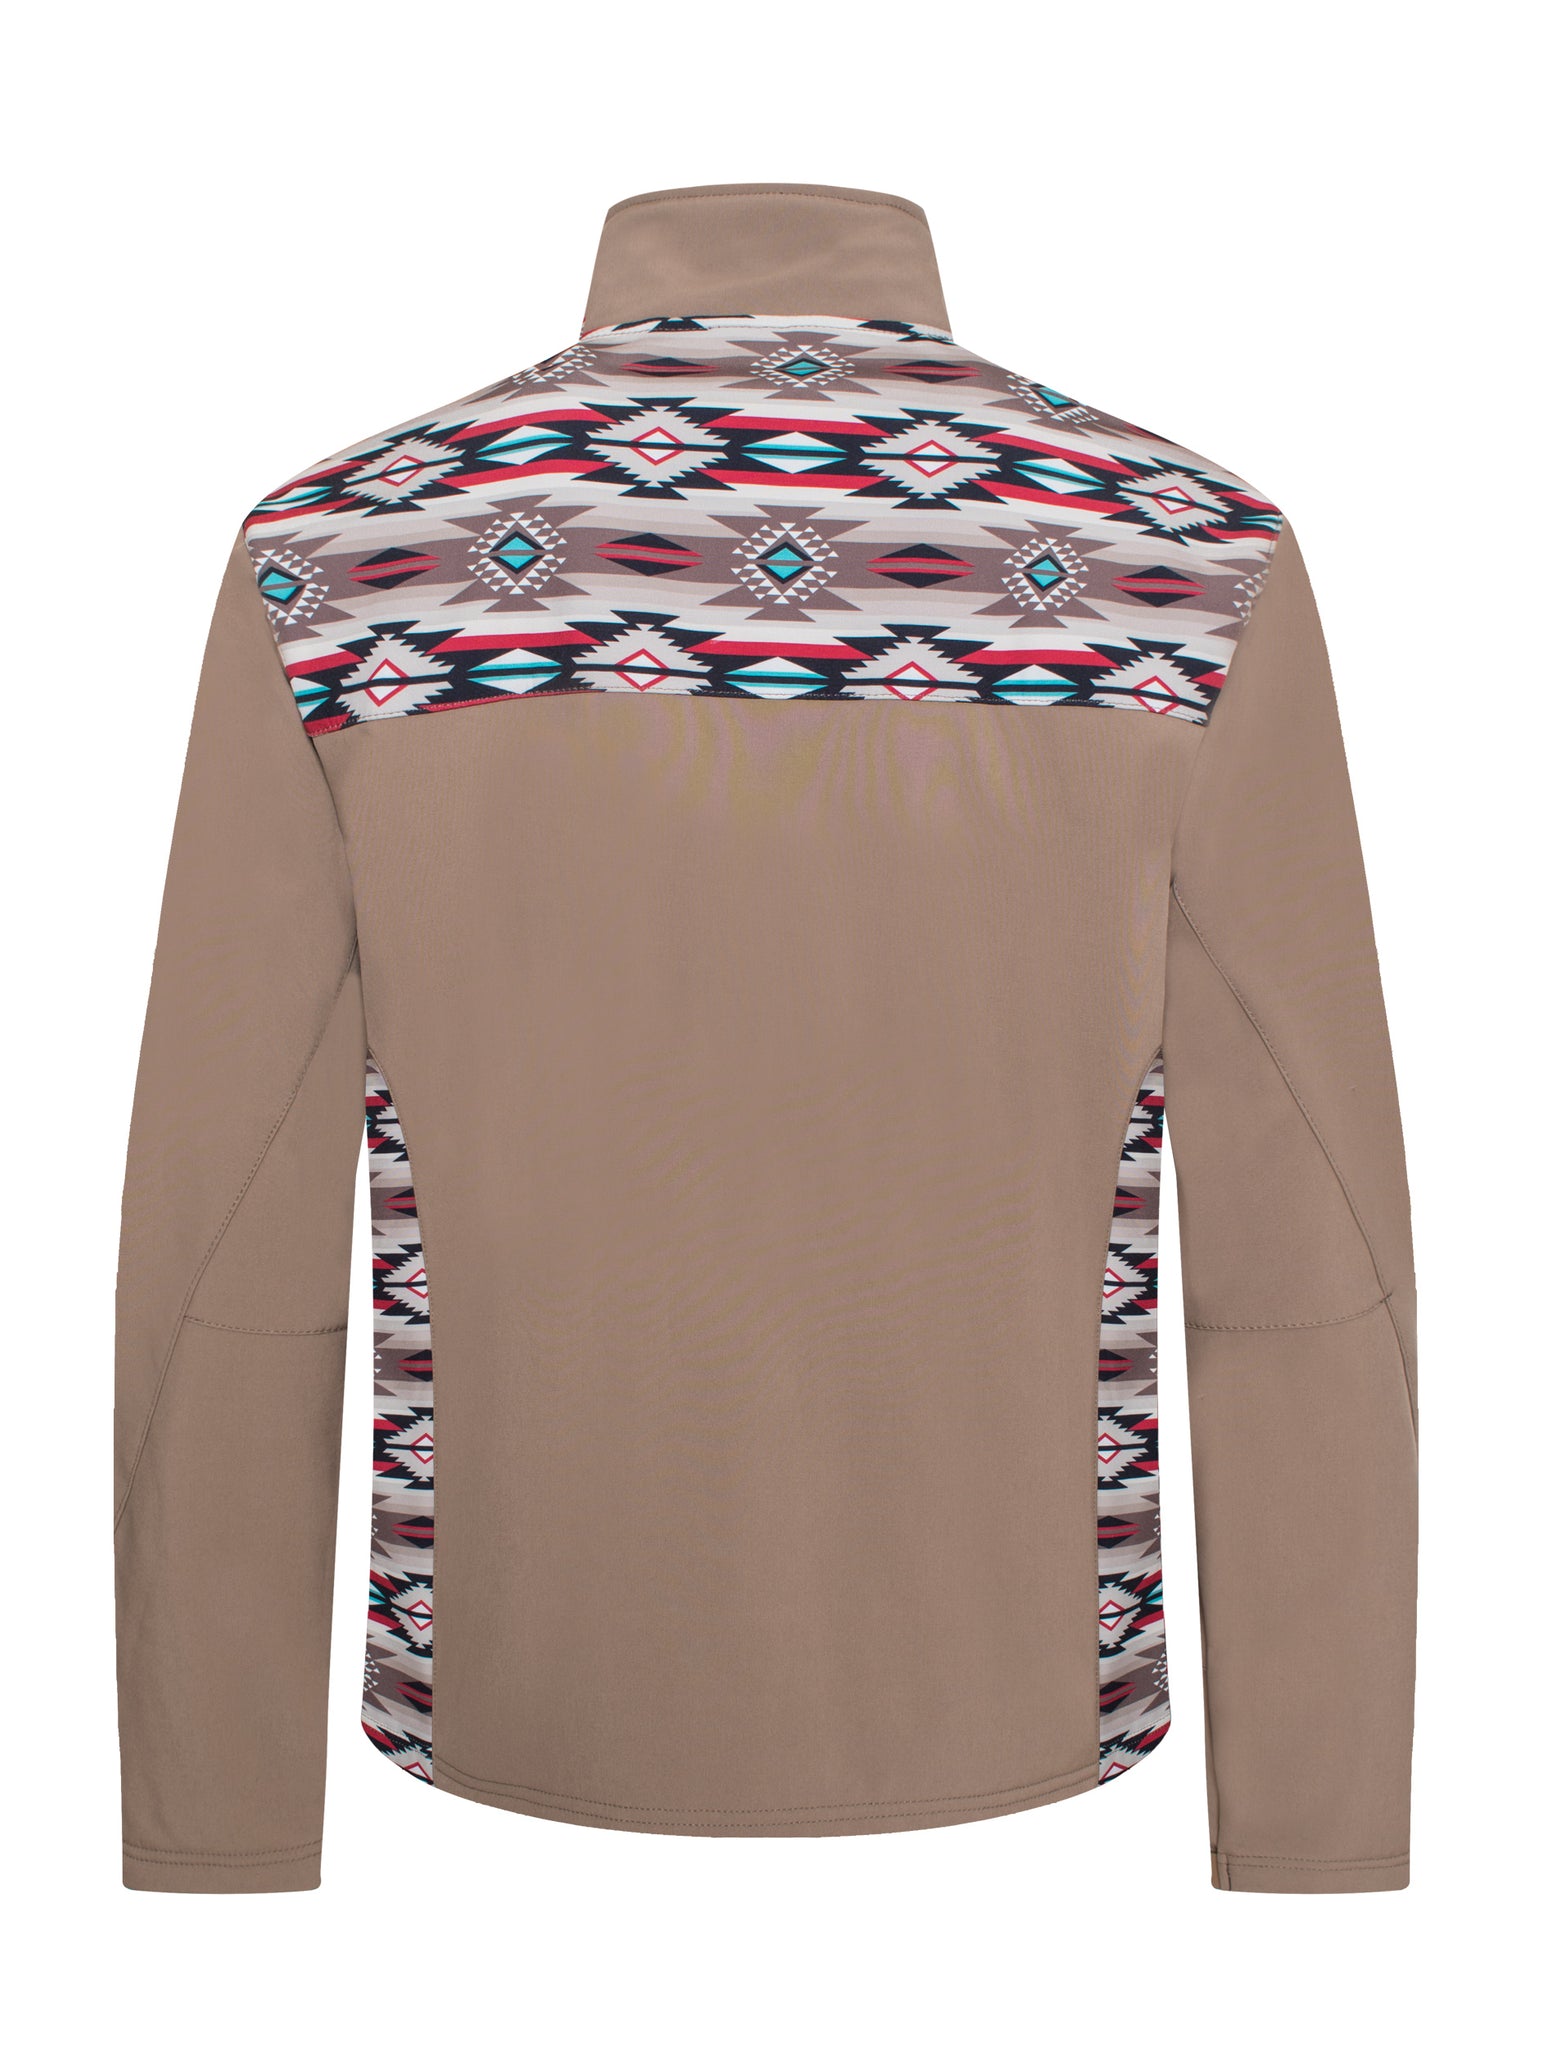 Men's Soft Shell Bonded Jacket With Western Aztec Print -NJ650EMB-AZ-KHAKI-BROWN